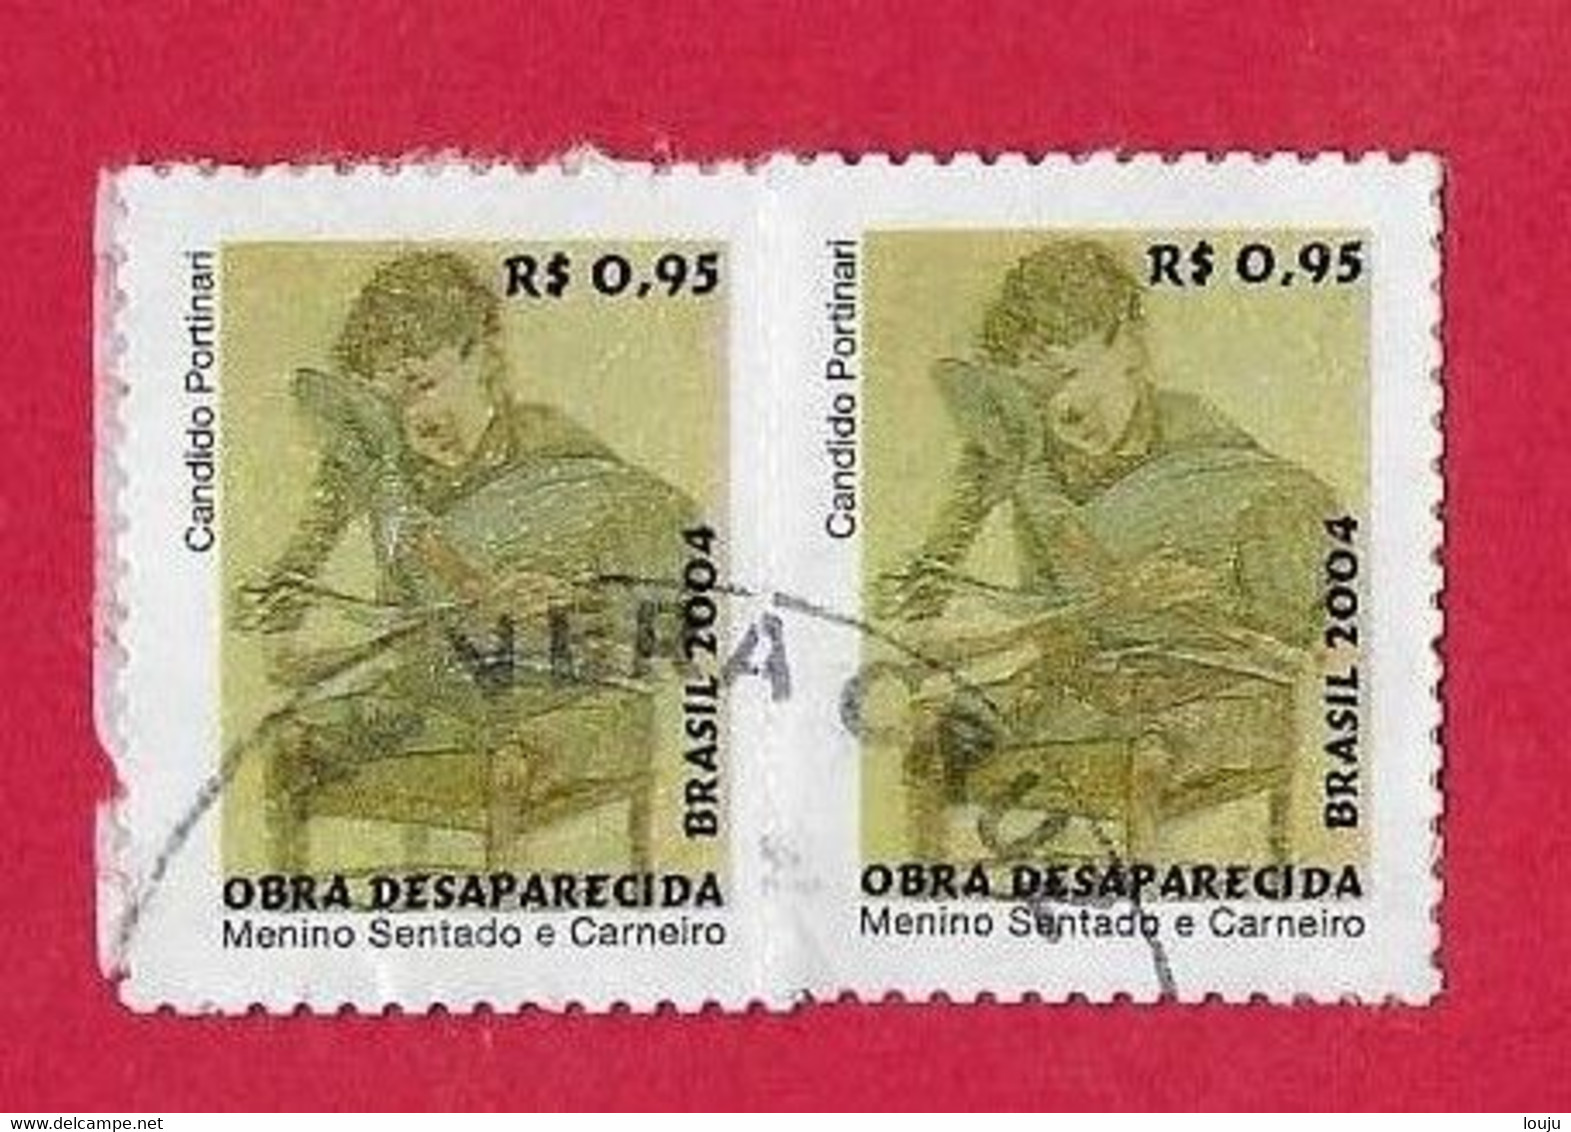 BRASIL 2004 - Used Stamps